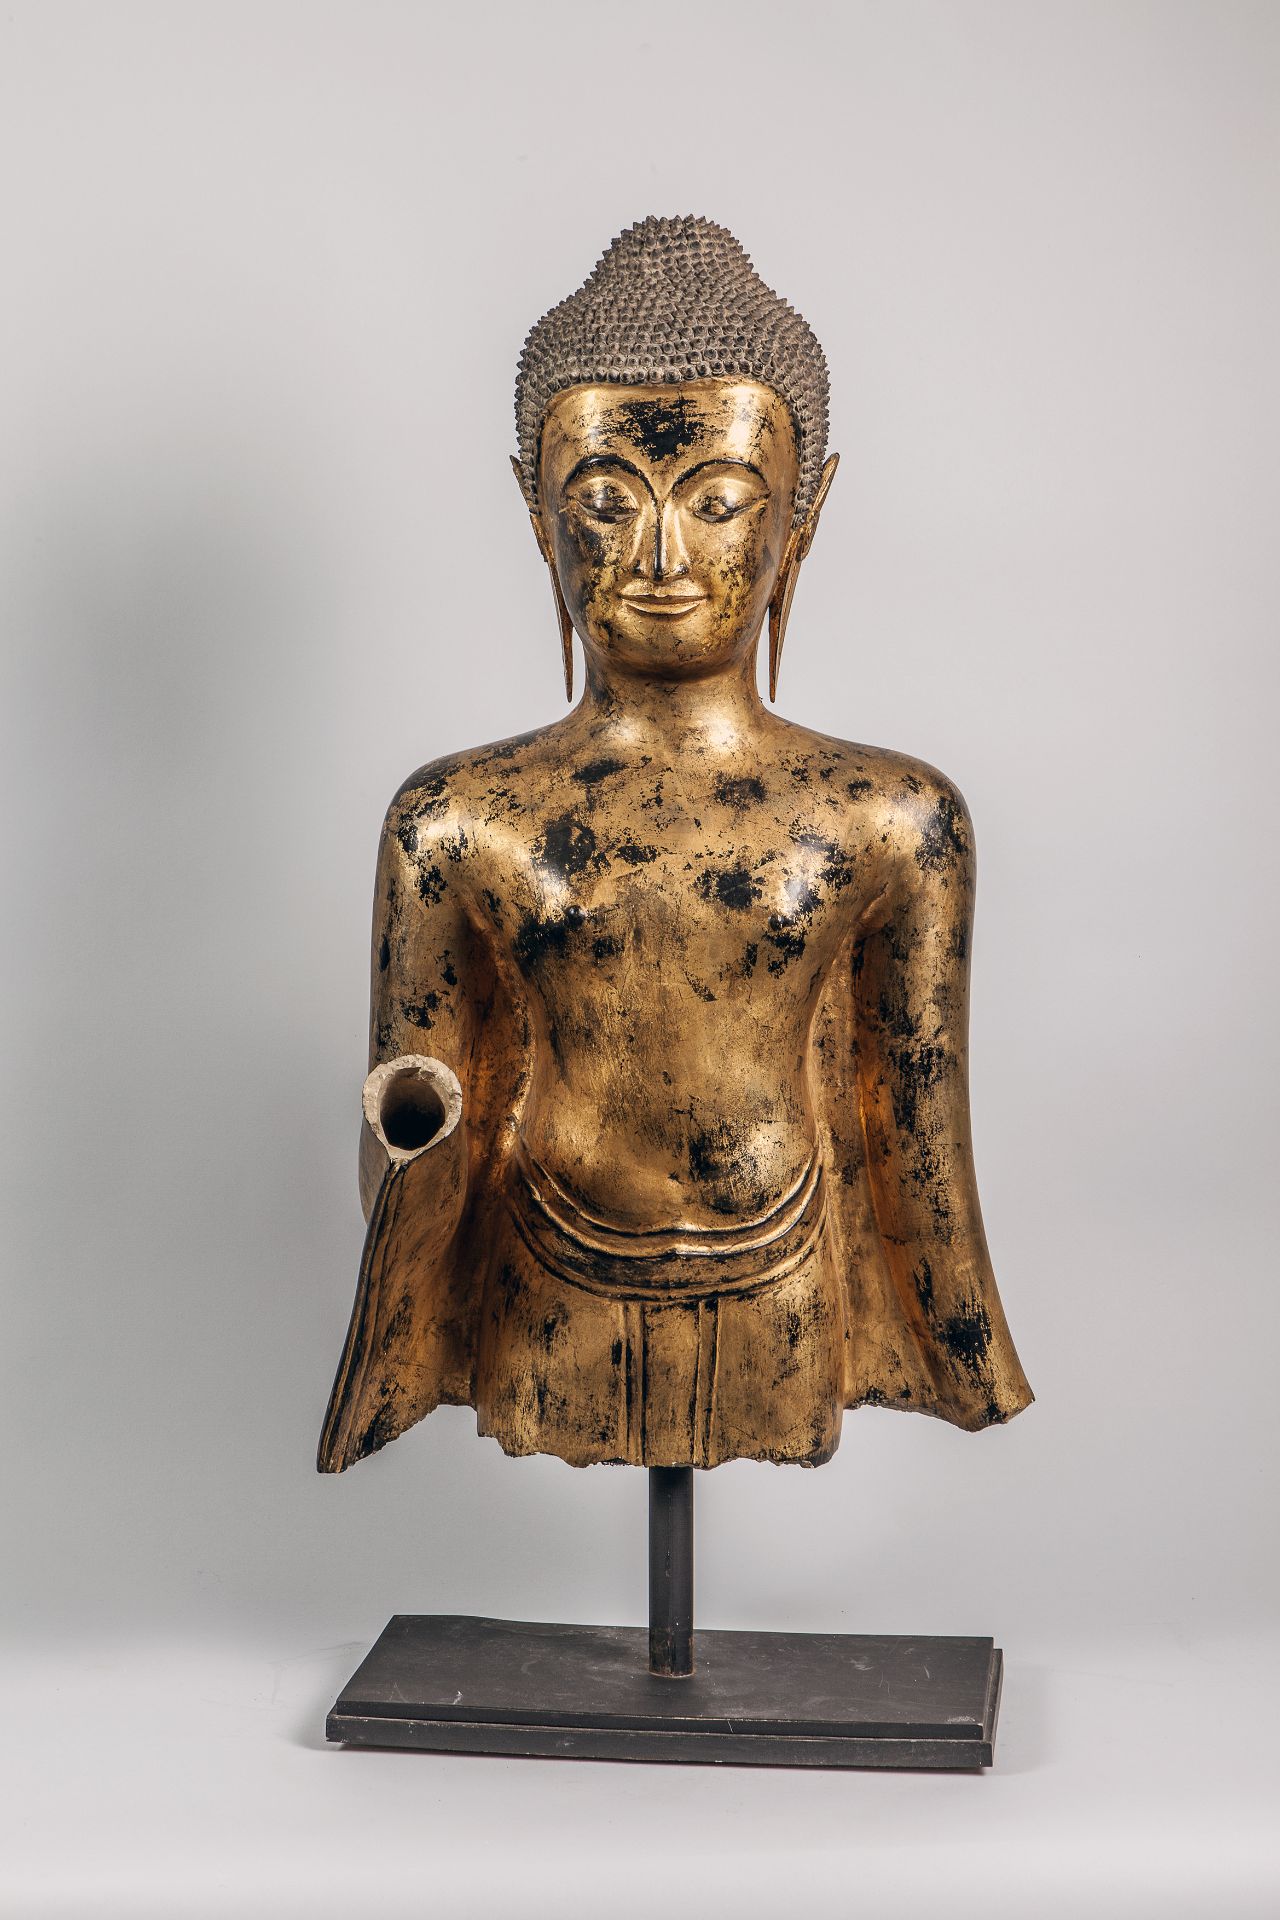 Buste de Buddha qui devait être dans la posture d'abaya mudra, les mains en avant, vêtu d'un